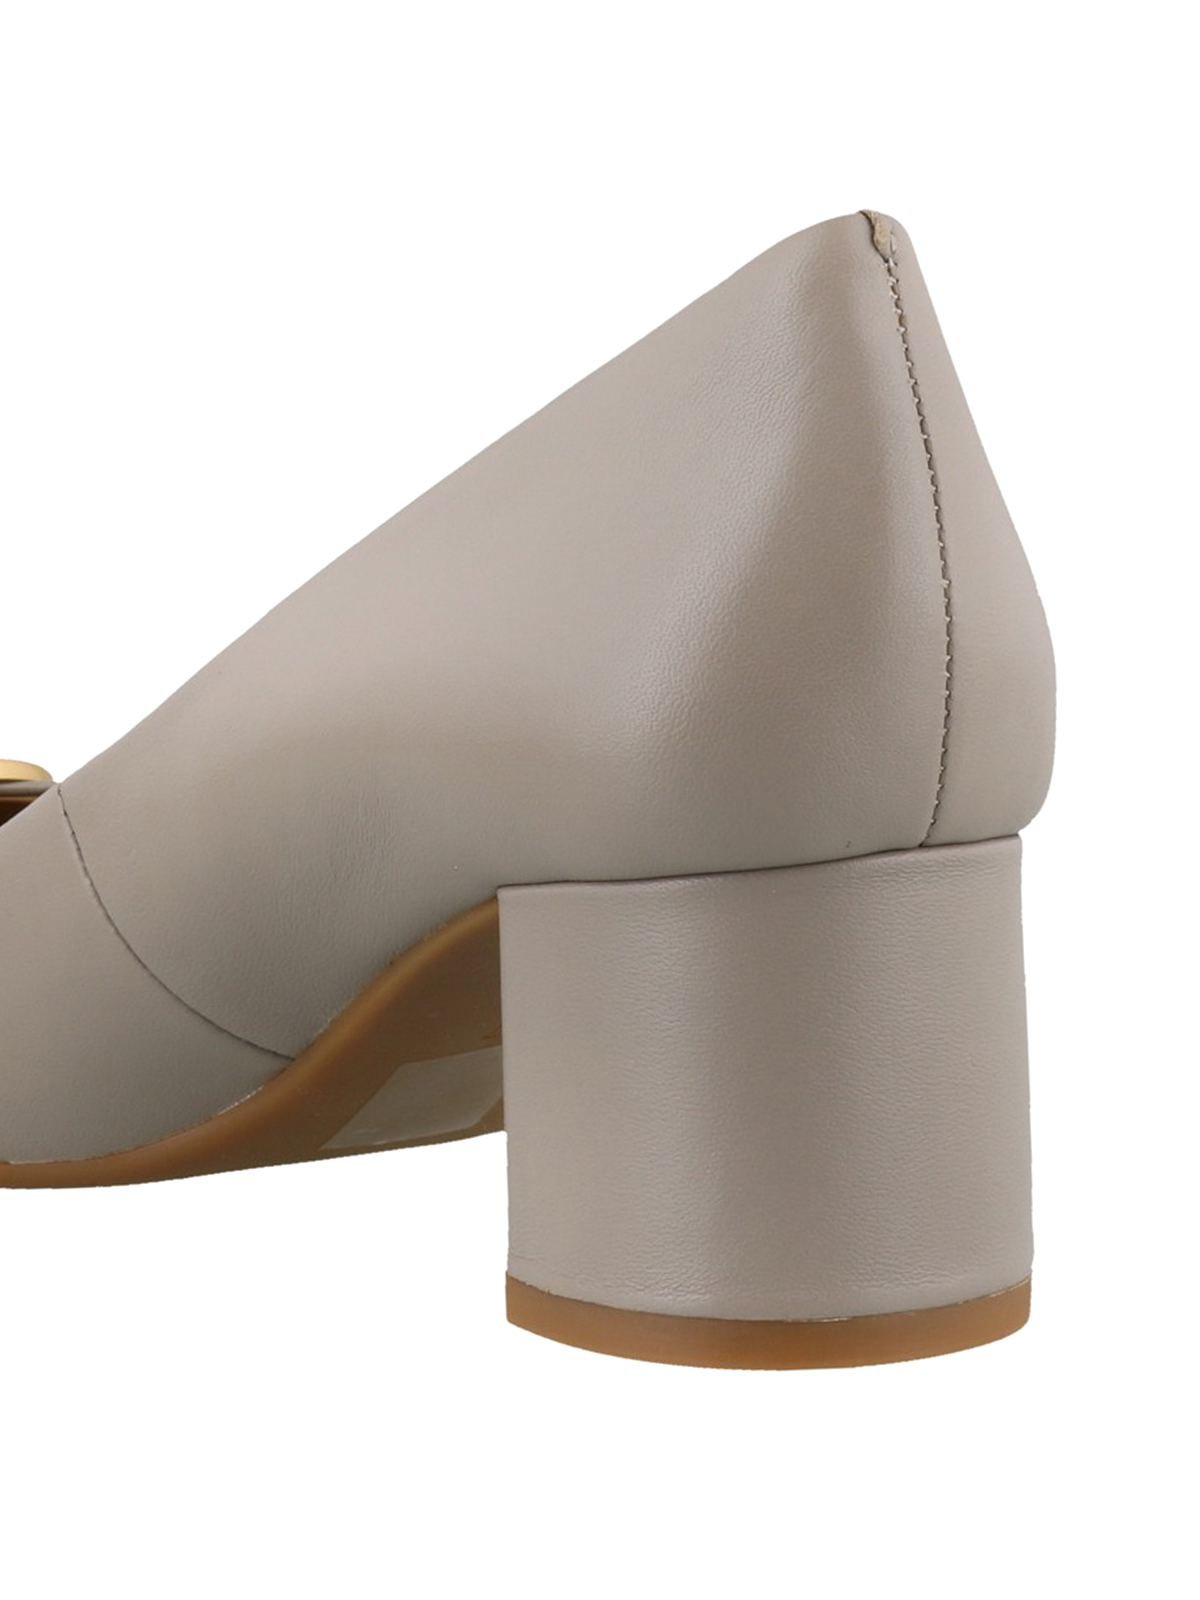 Court shoes Tory Burch - Chelsea cap-toe pumps - 54671023 